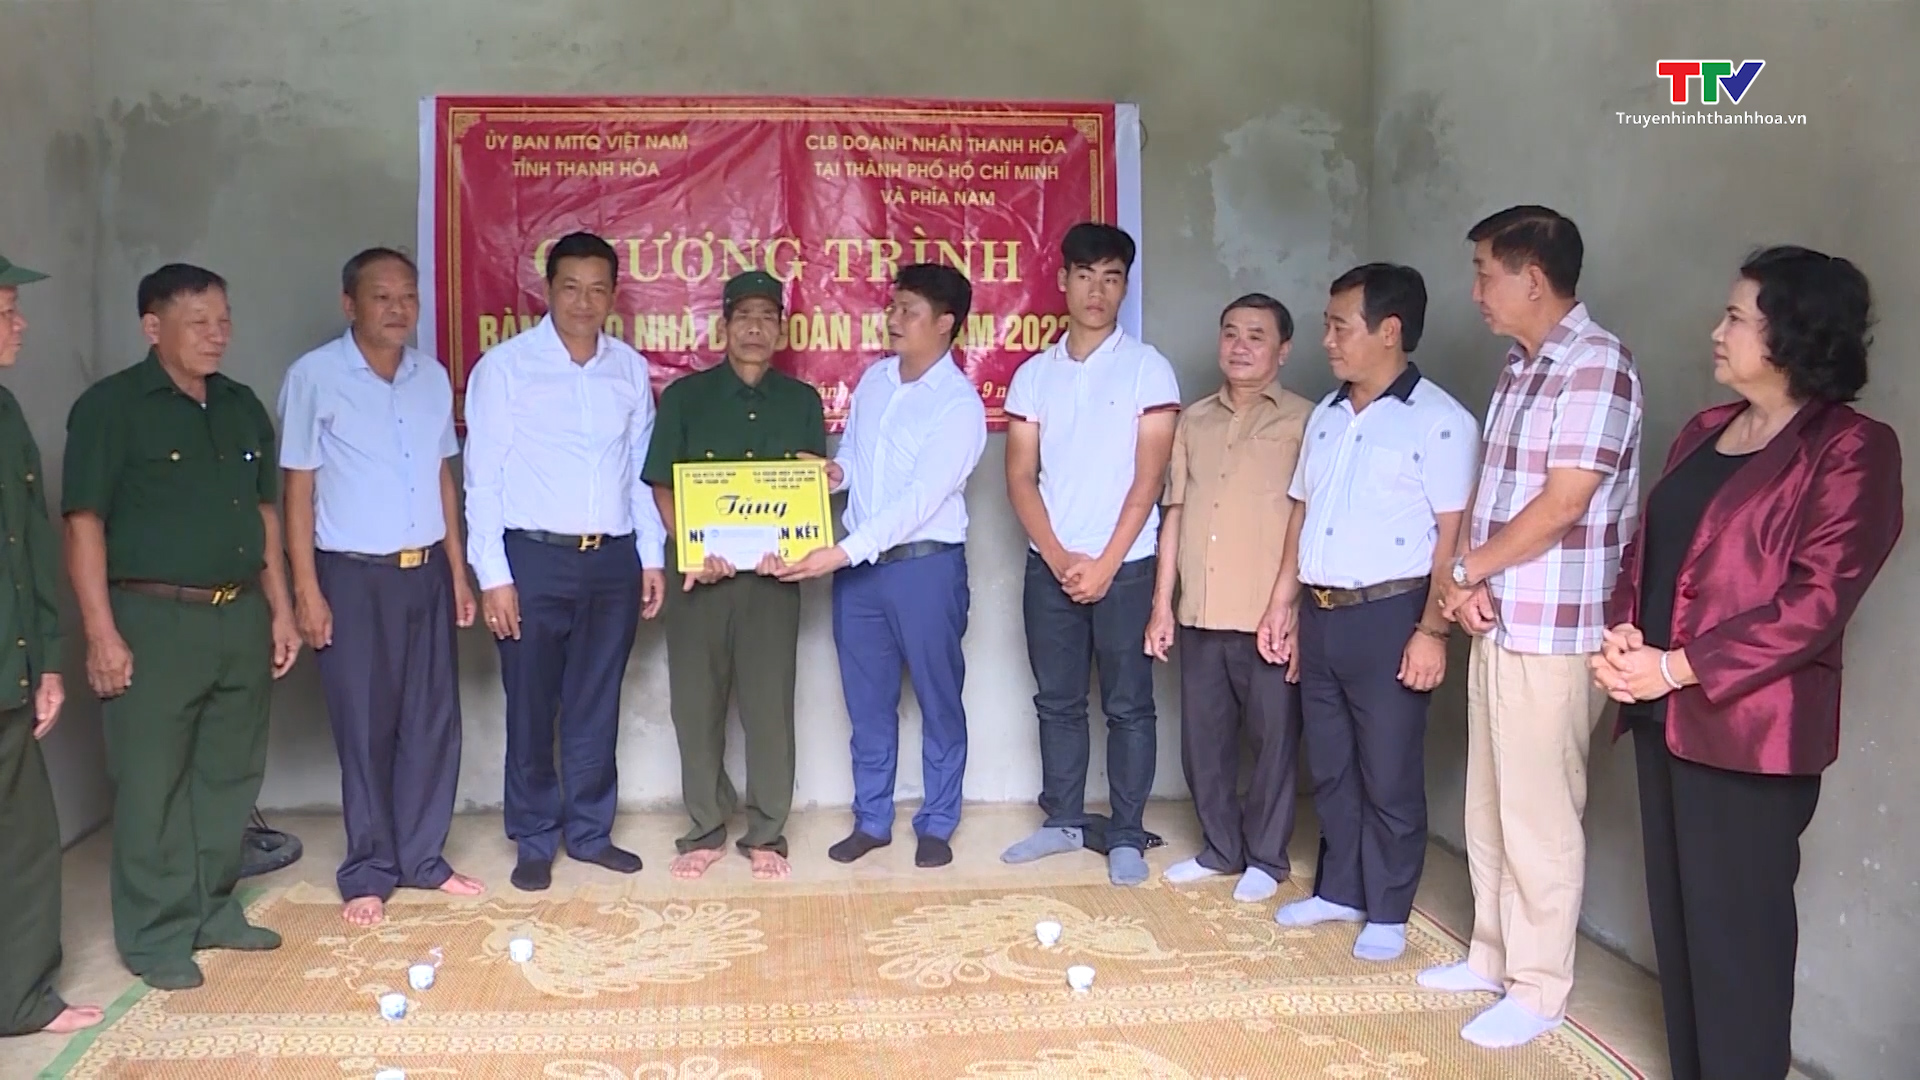 Câu lạc bộ Doanh nhân Thanh Hóa tại thành phố Hồ Chí Minh và phía Nam góp sức xây dựng nhà đại đoàn kết cho hộ nghèo- Ảnh 1.